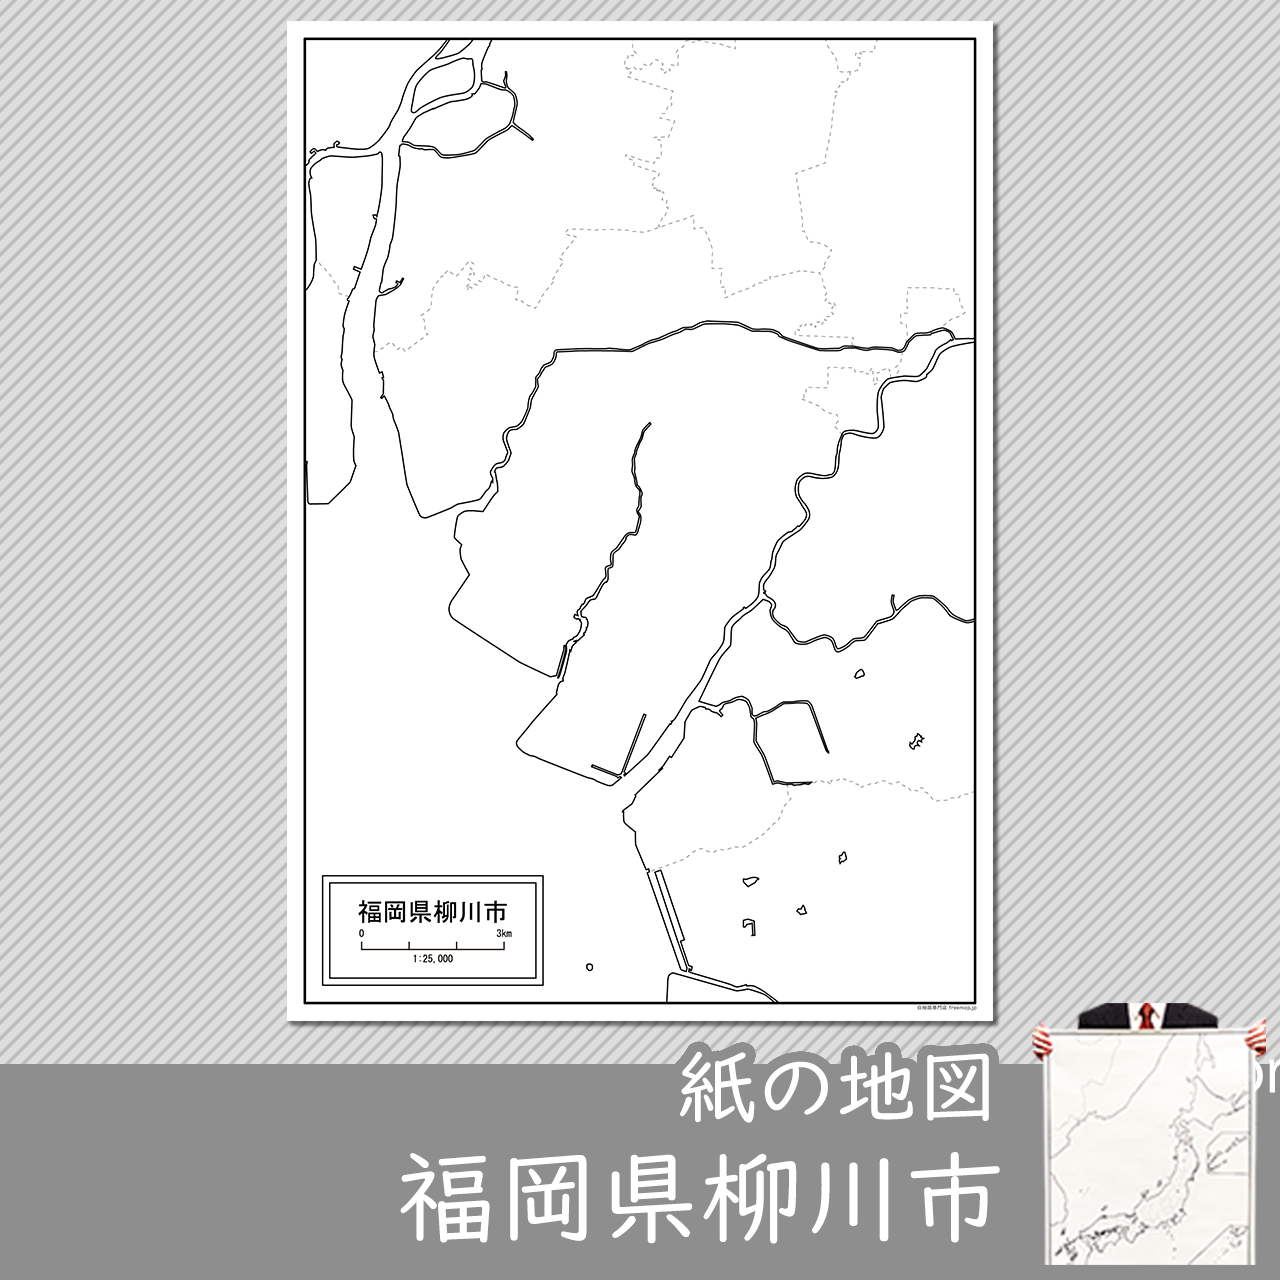 柳川市の紙の白地図のサムネイル